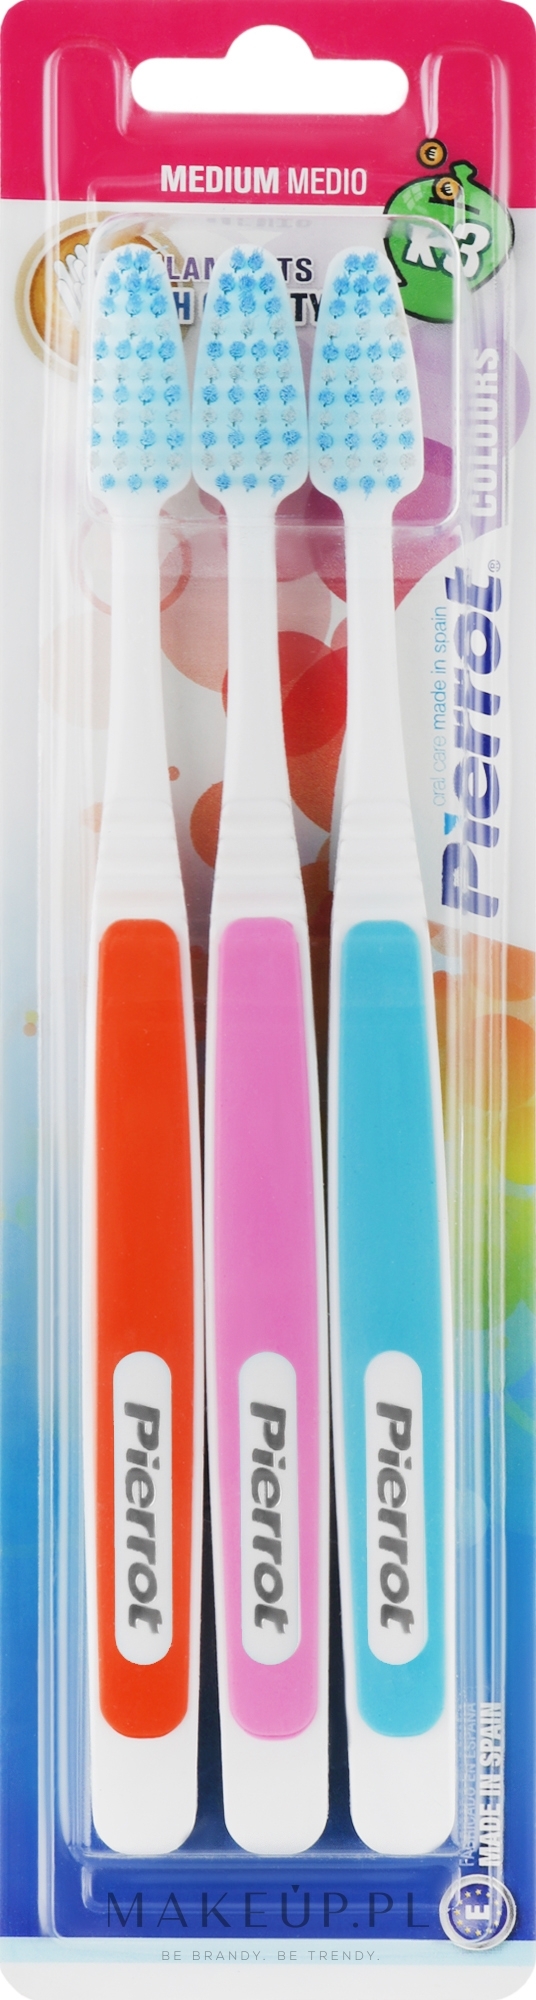 Zestaw szczoteczek do zębów Koloros, pomarańczowa + różowa + niebieska - Pierrot New Active — Zdjęcie 3 szt.